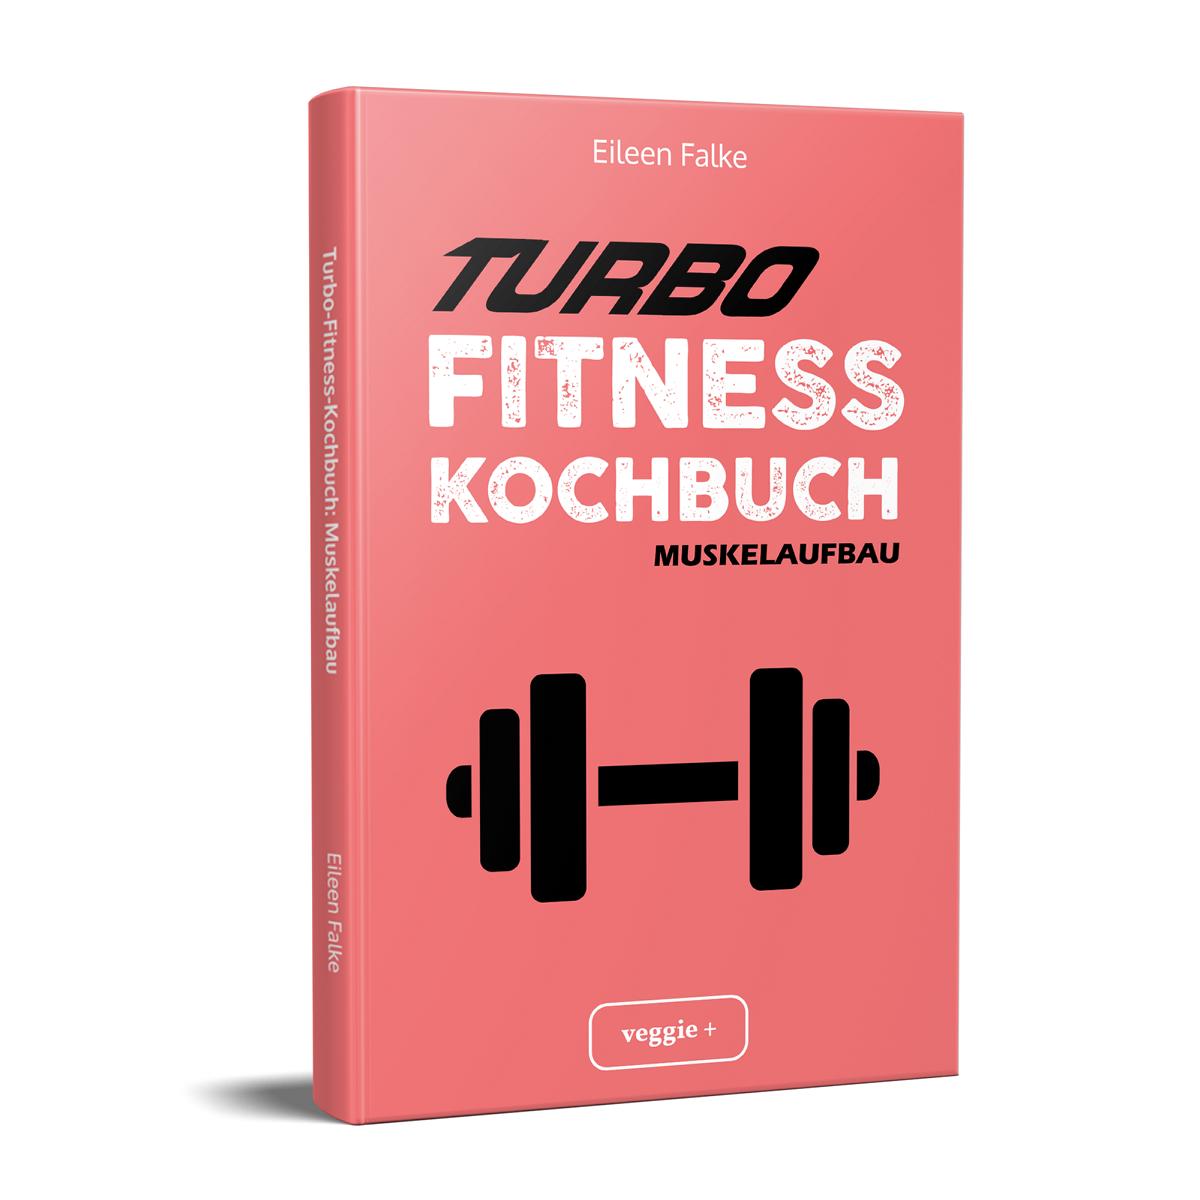 Turbo-Fitness-Kochbuch (Muskelaufbau): Muskelaufbau 100 schnelle Fitness-Rezepte für eine gesunde Ernährung und einen nachhaltigen Muskelaufbau von Eileen Falke im veggie + Verlag